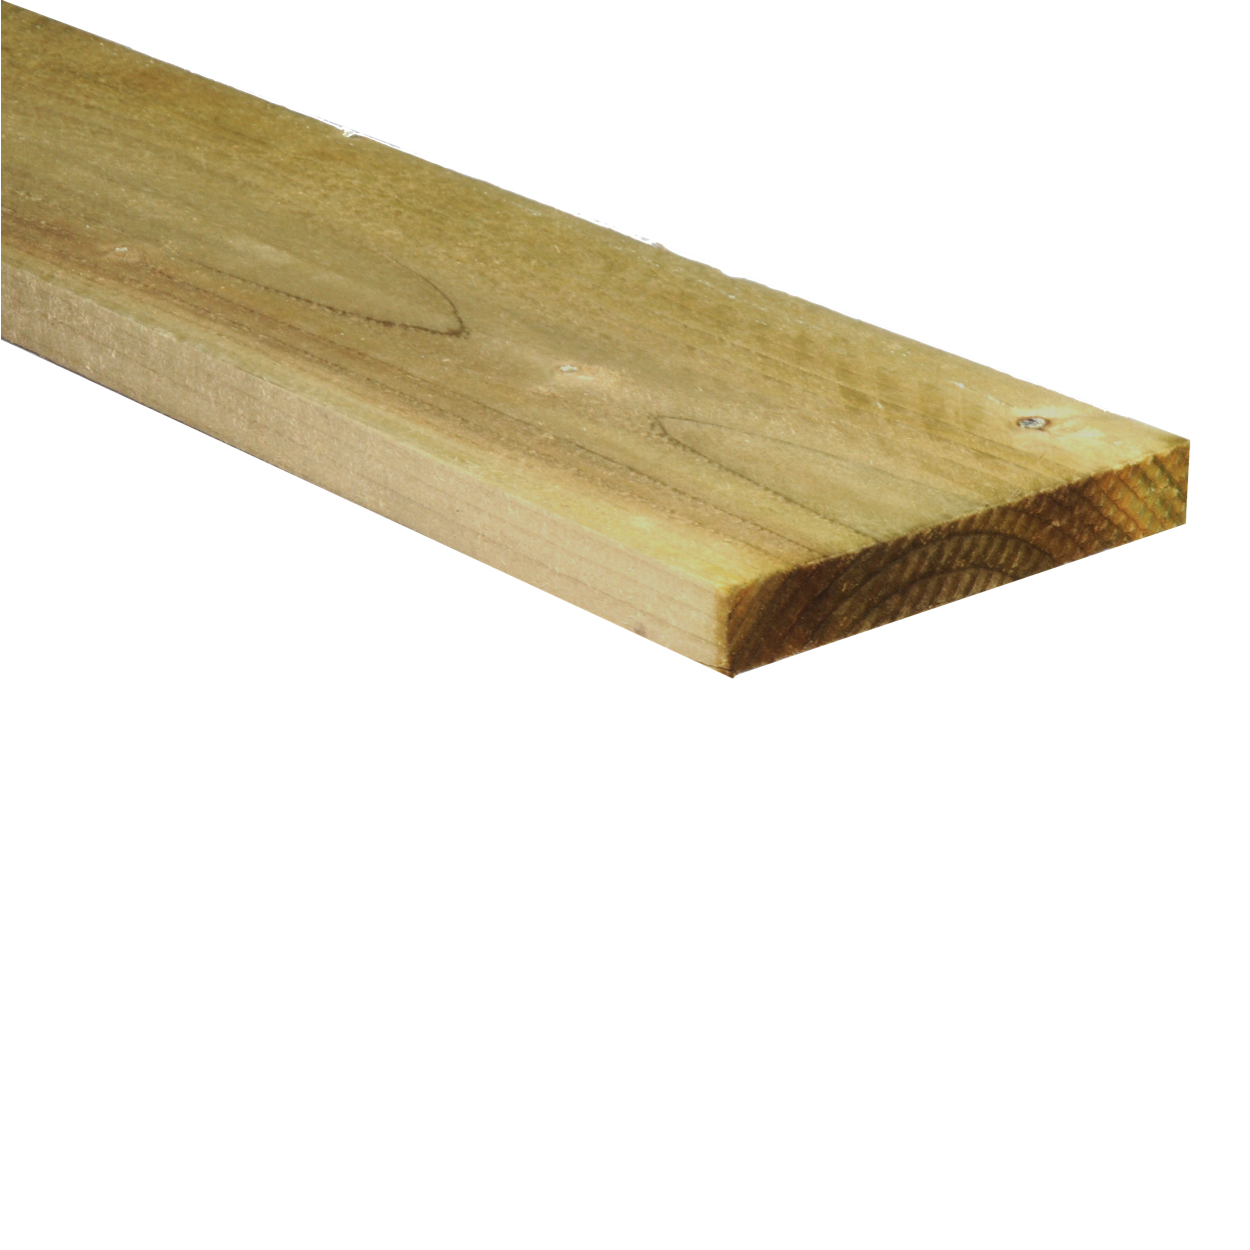 6 x 1 timber 1.8m